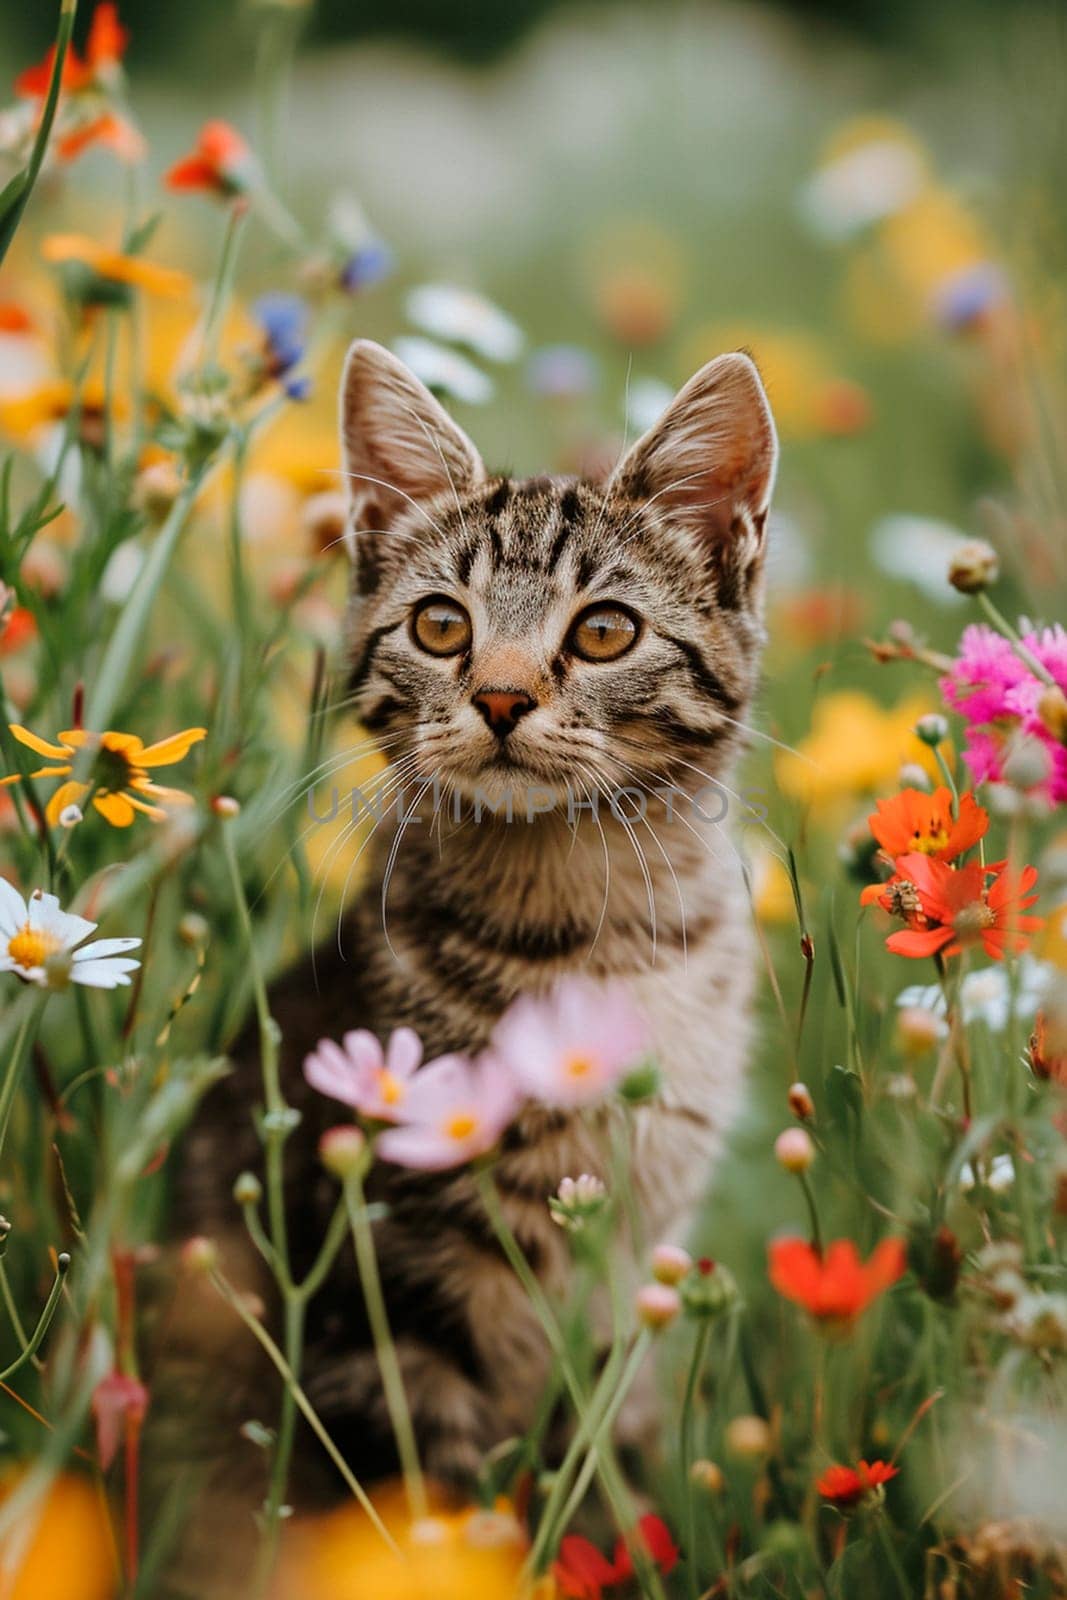 cat in a flower field. Selective focus. by yanadjana